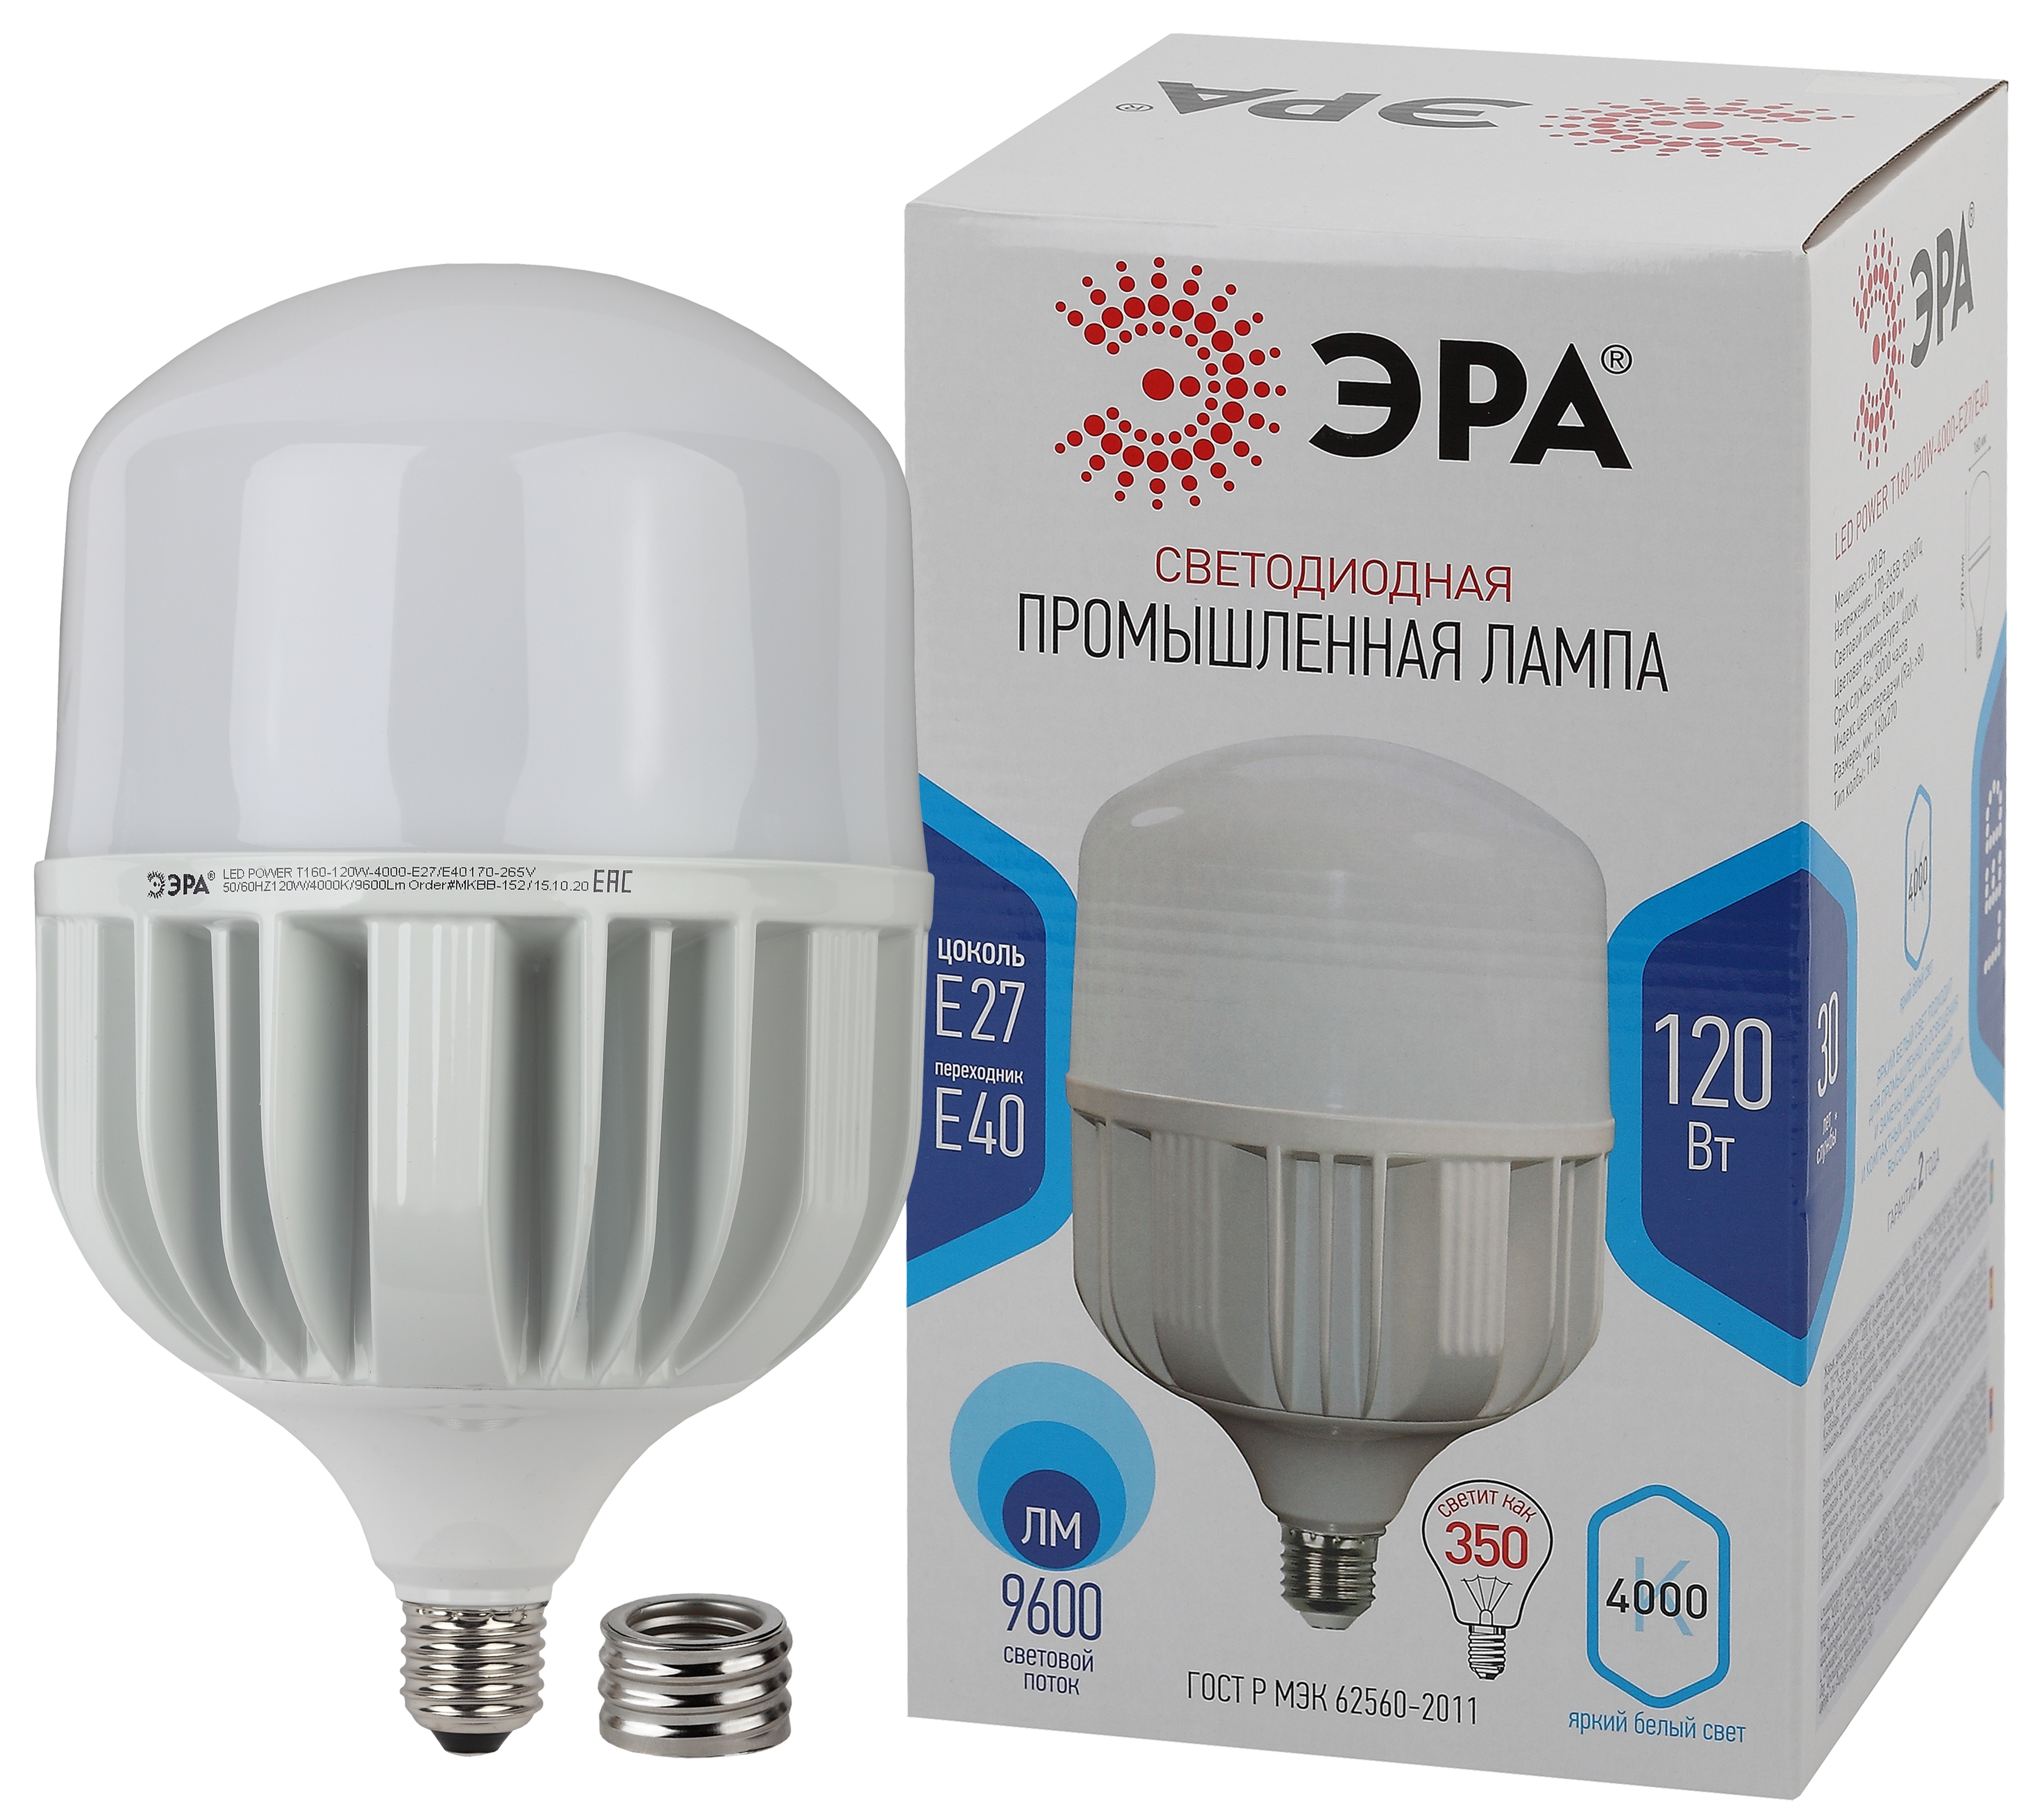 LED POWER T160-120W-4000-E27/E40 ЭРА (диод, колокол, 120Вт, нейтр, E27/E40) (6/96)